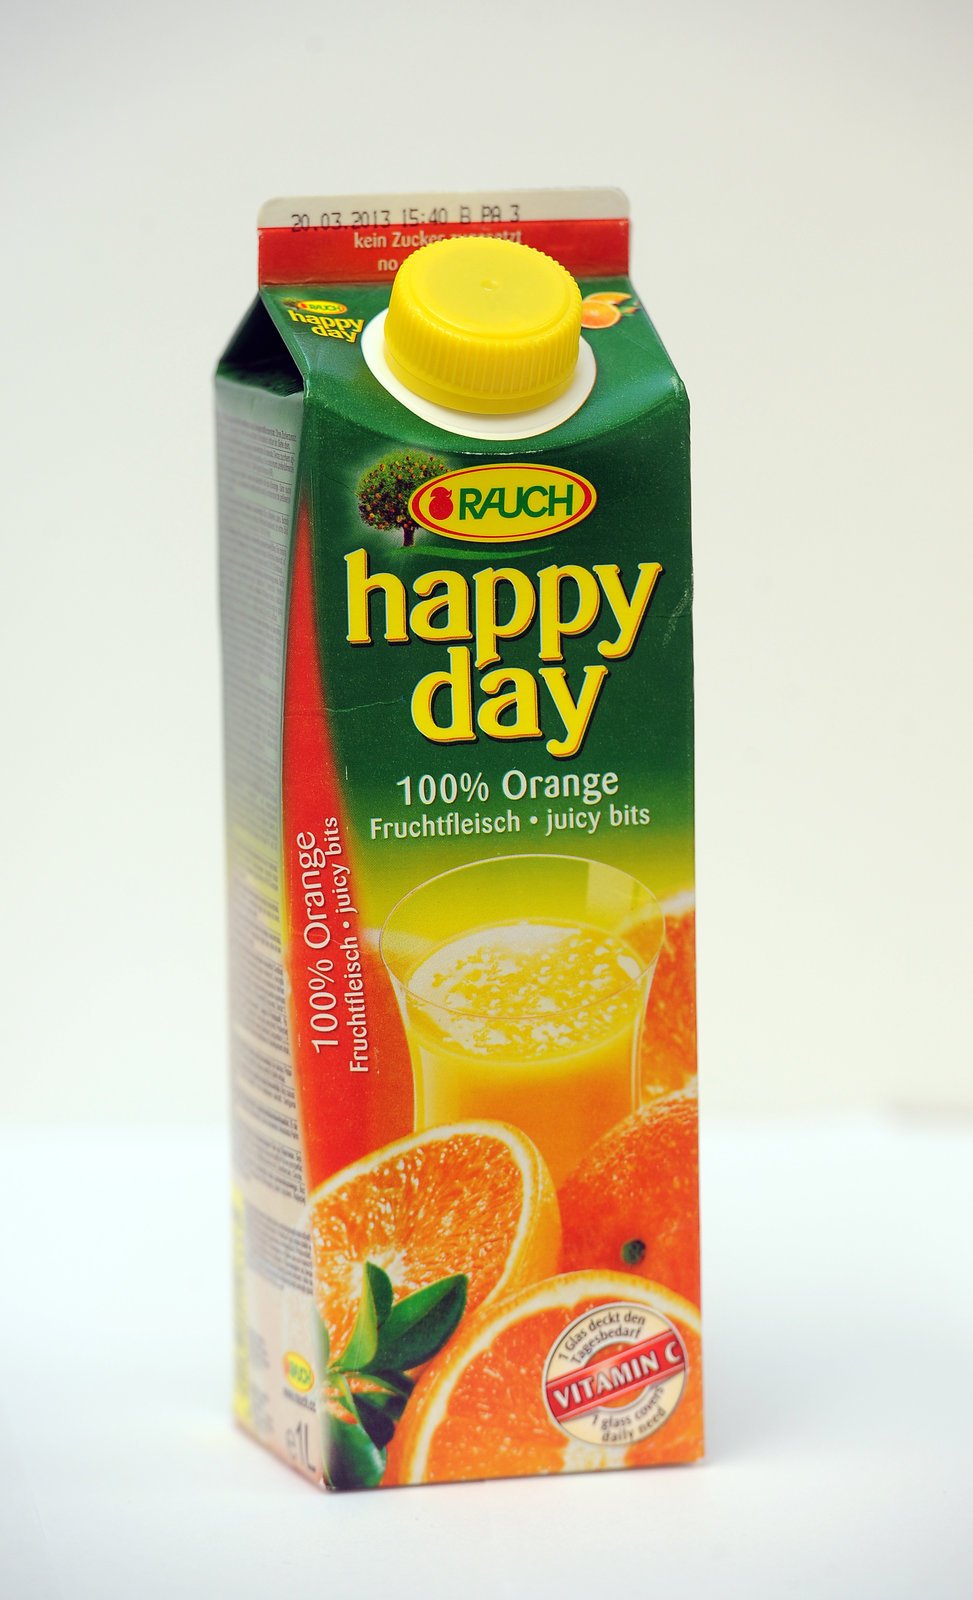 Happy day Příchuť: pomeranč Vyrábí: Rauch 1 sklenice obsahuje necelých 5 kostek cukru Podíl ovocné složky: 100 % Chuť: mírně nahořklá, ale osvěžující Sladidla: neobsahuje Éčka: neobsahuje Hodnocení: V podstatě jde o čirý pomerančový koncentrát bez přidaného cukru. Navíc v jedné sklenici přijmete 75 gramů vitaminu C, což vám pokryje denní dávku. Známka: 1